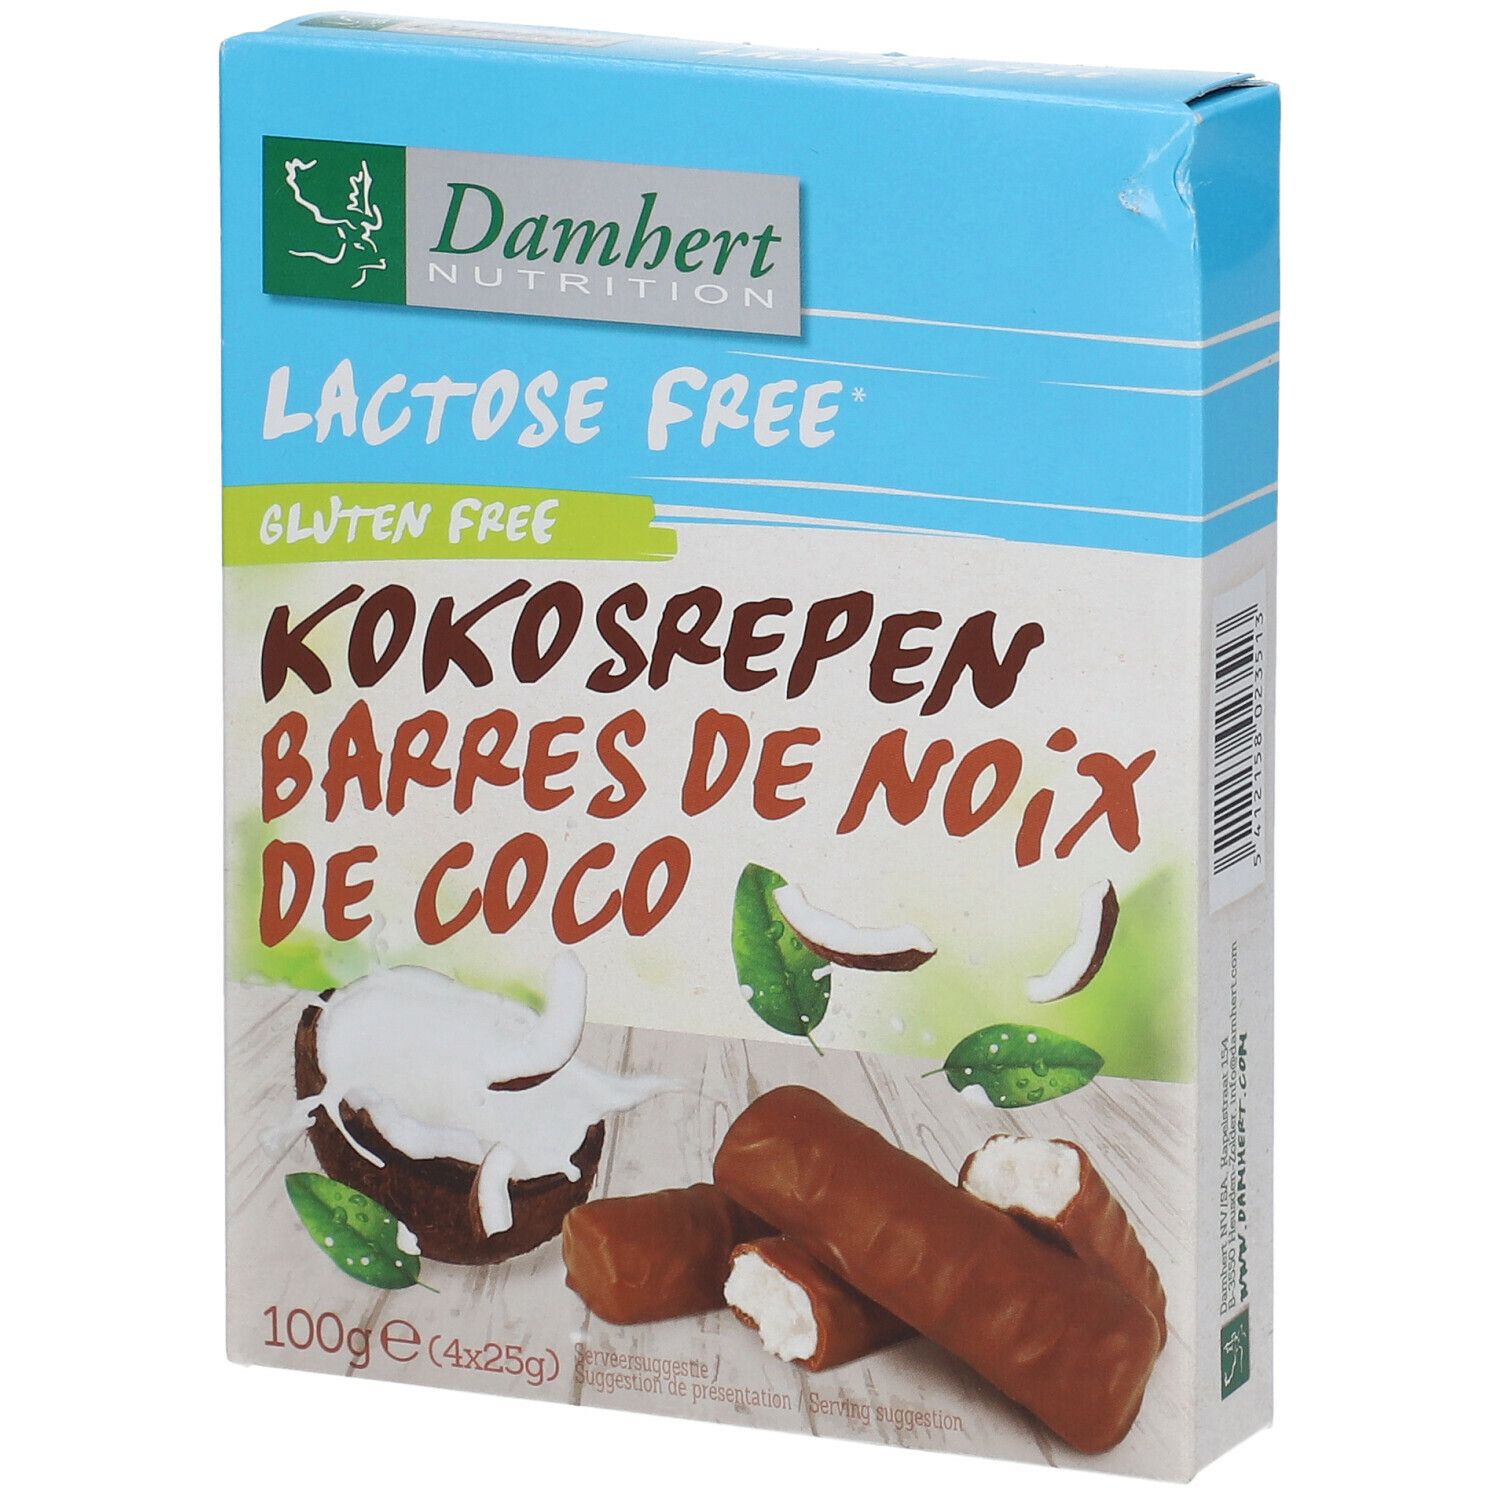 Damhert Damhert Lactose Free Barres de noix de coco sans gluten